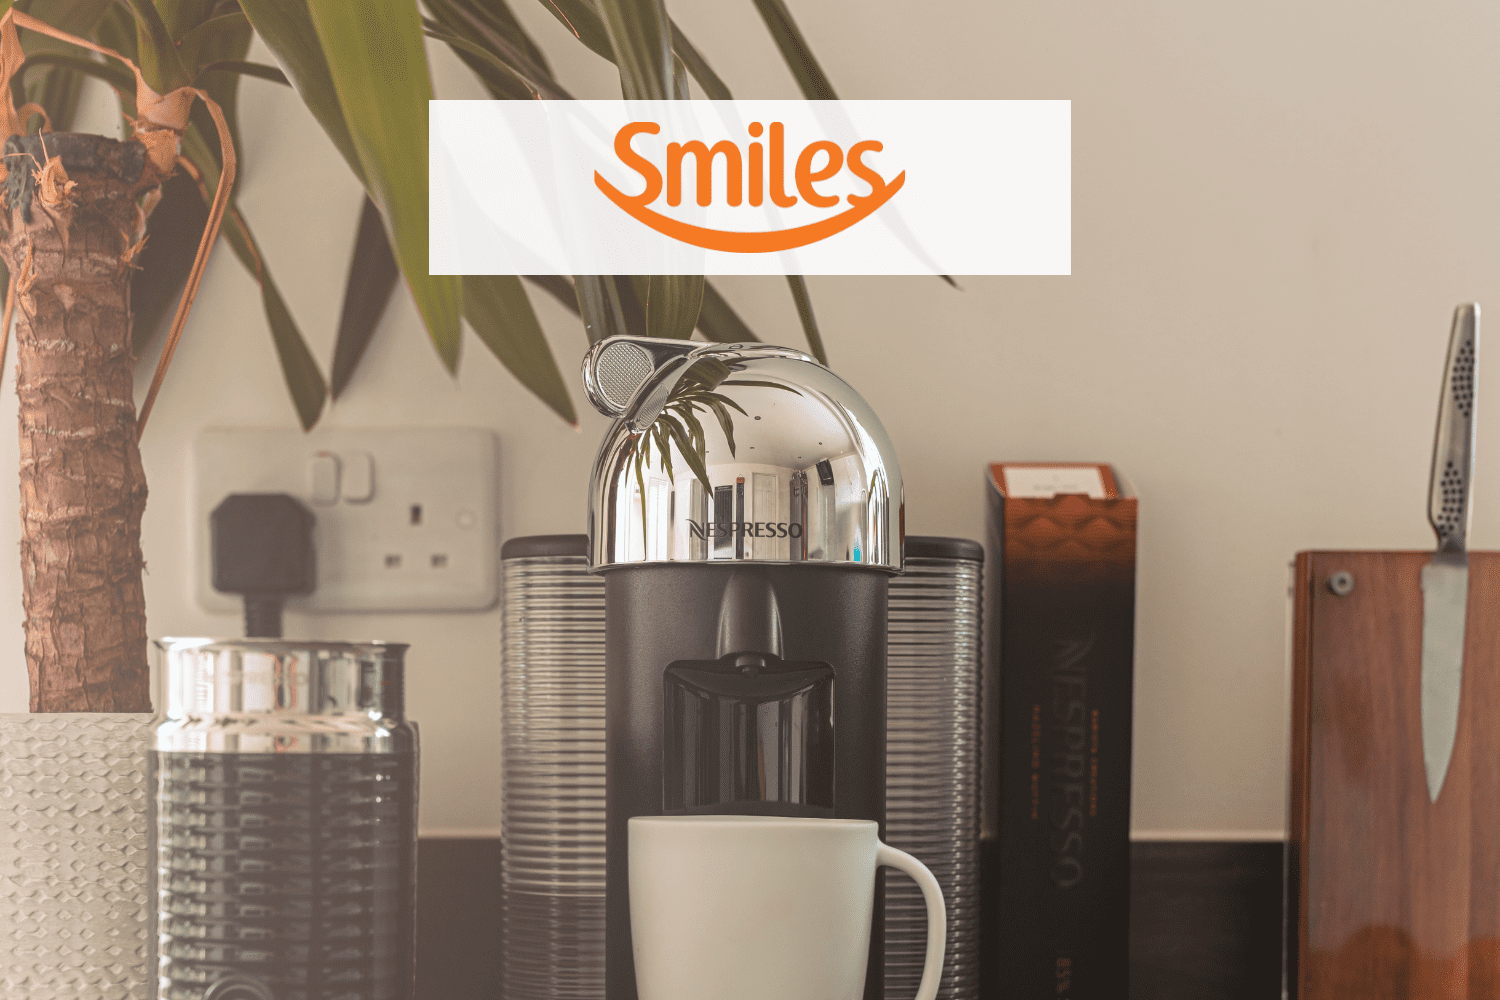 cafeteira com logo Smiles